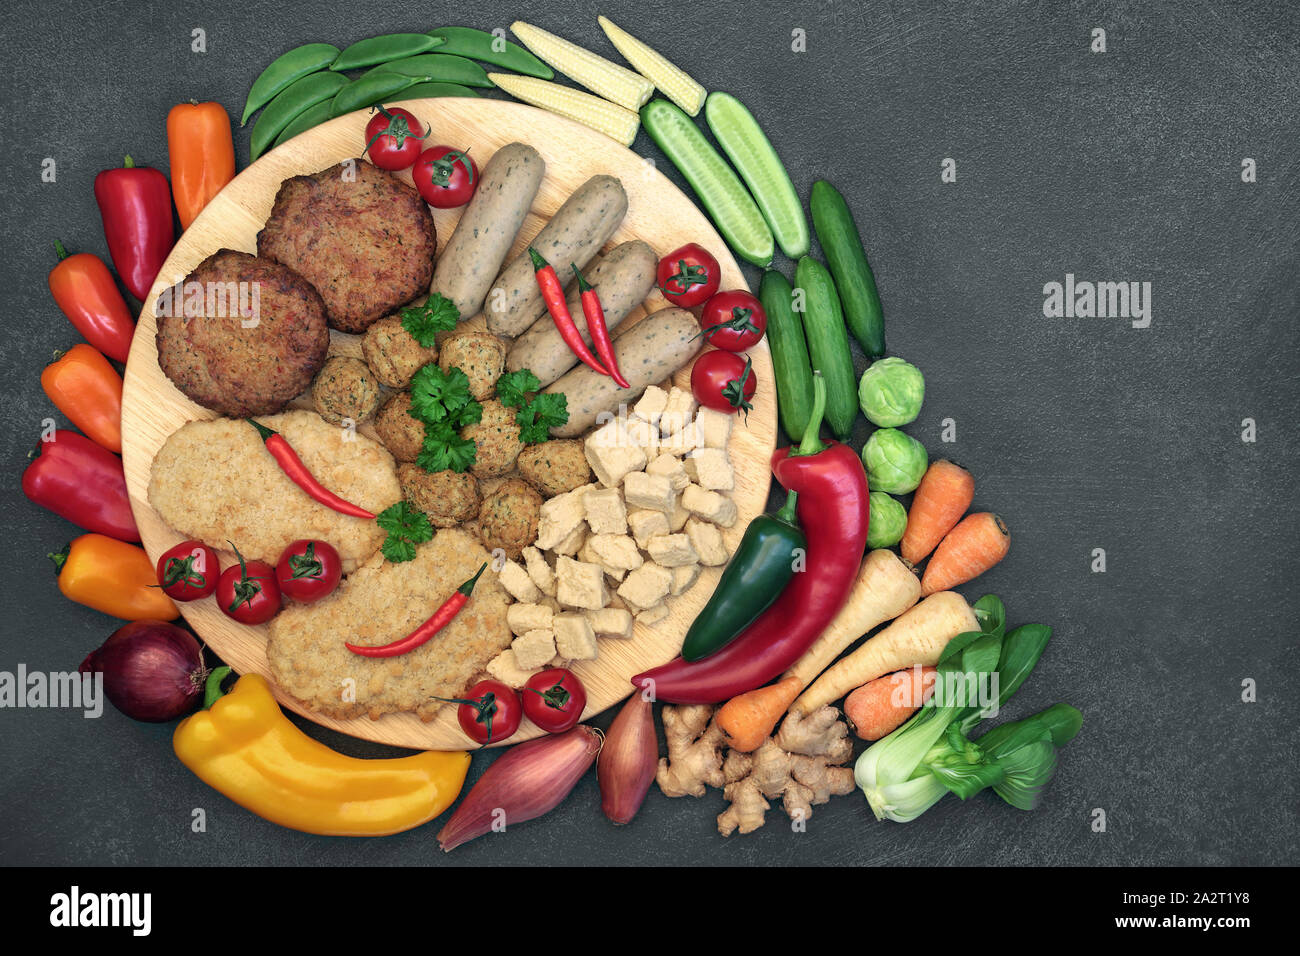 Nourriture santé pour végétaliens mangent avec éthique quorn sélection les substituts de viande riche en protéines et les fruits et légumes. Banque D'Images